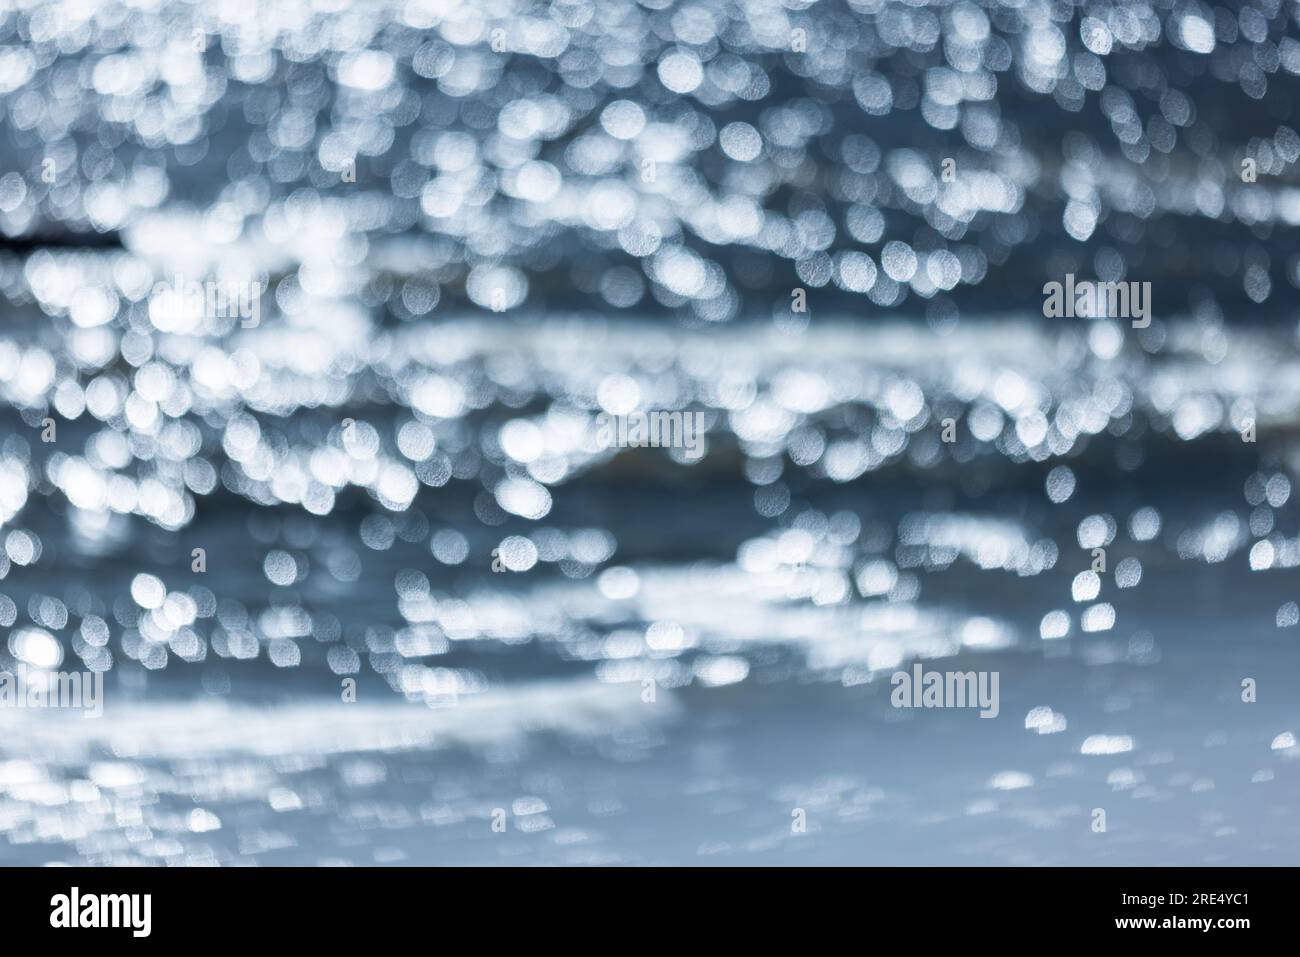 Eau de mer bleue brillante avec des reflets lumineux, photo de fond flou naturel Banque D'Images